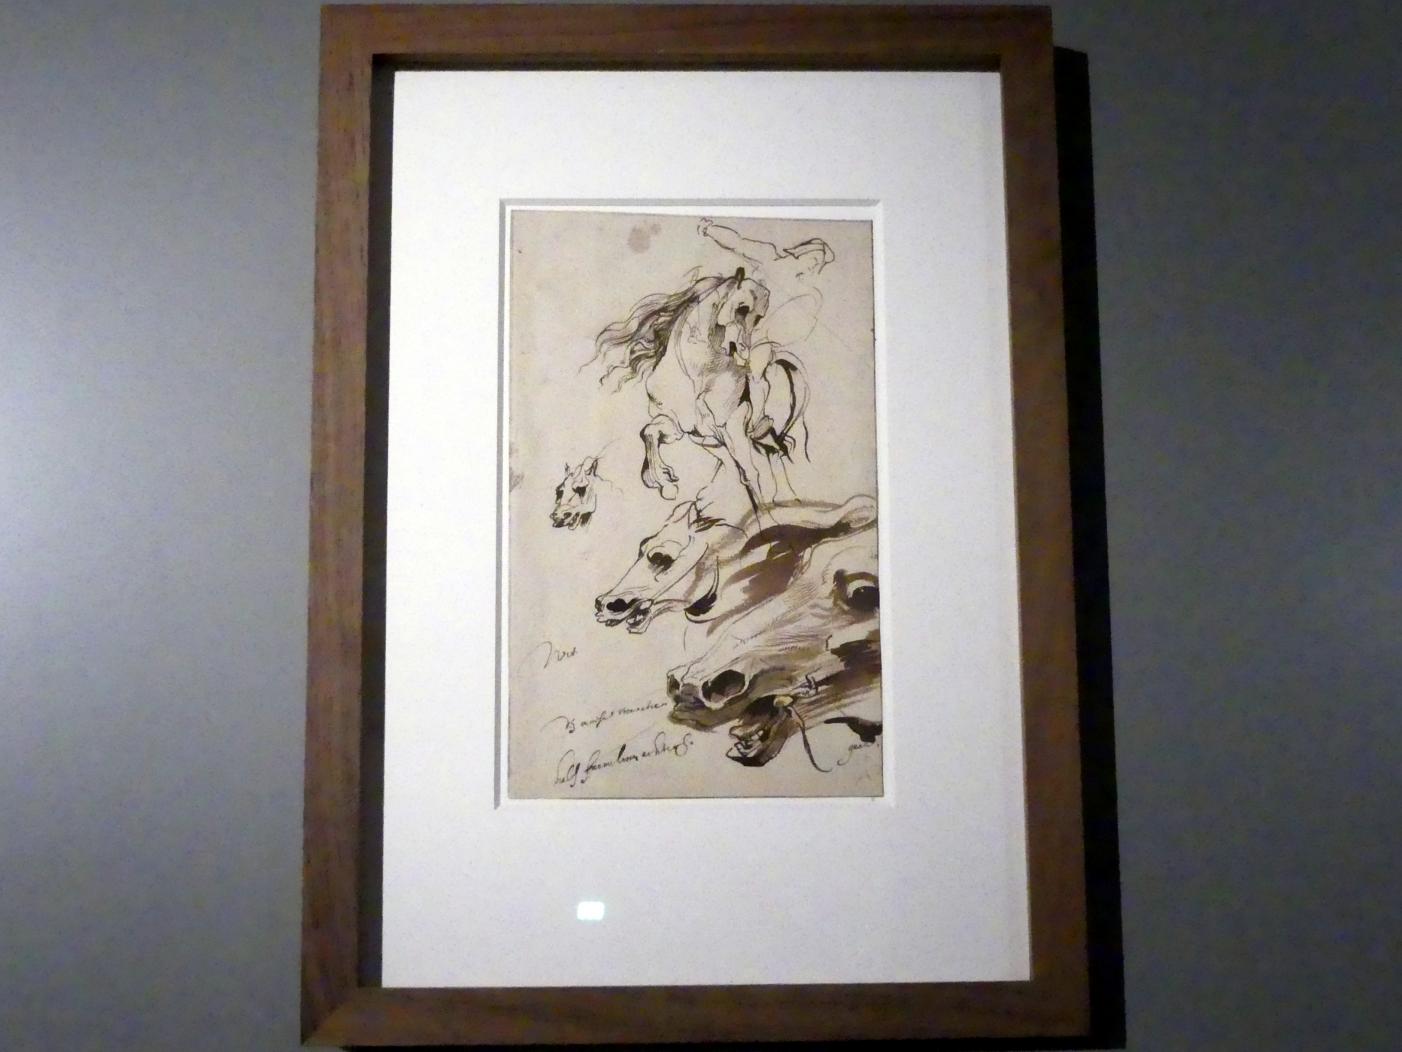 Anthonis (Anton) van Dyck (1614–1641), Studie von drei Pferdeköpfen und einem Reiter, München, Alte Pinakothek, Ausstellung "Van Dyck" vom 25.10.2019-02.02.2020, Von Antwerpen nach Italien - 2, um 1617–1621, Bild 2/3